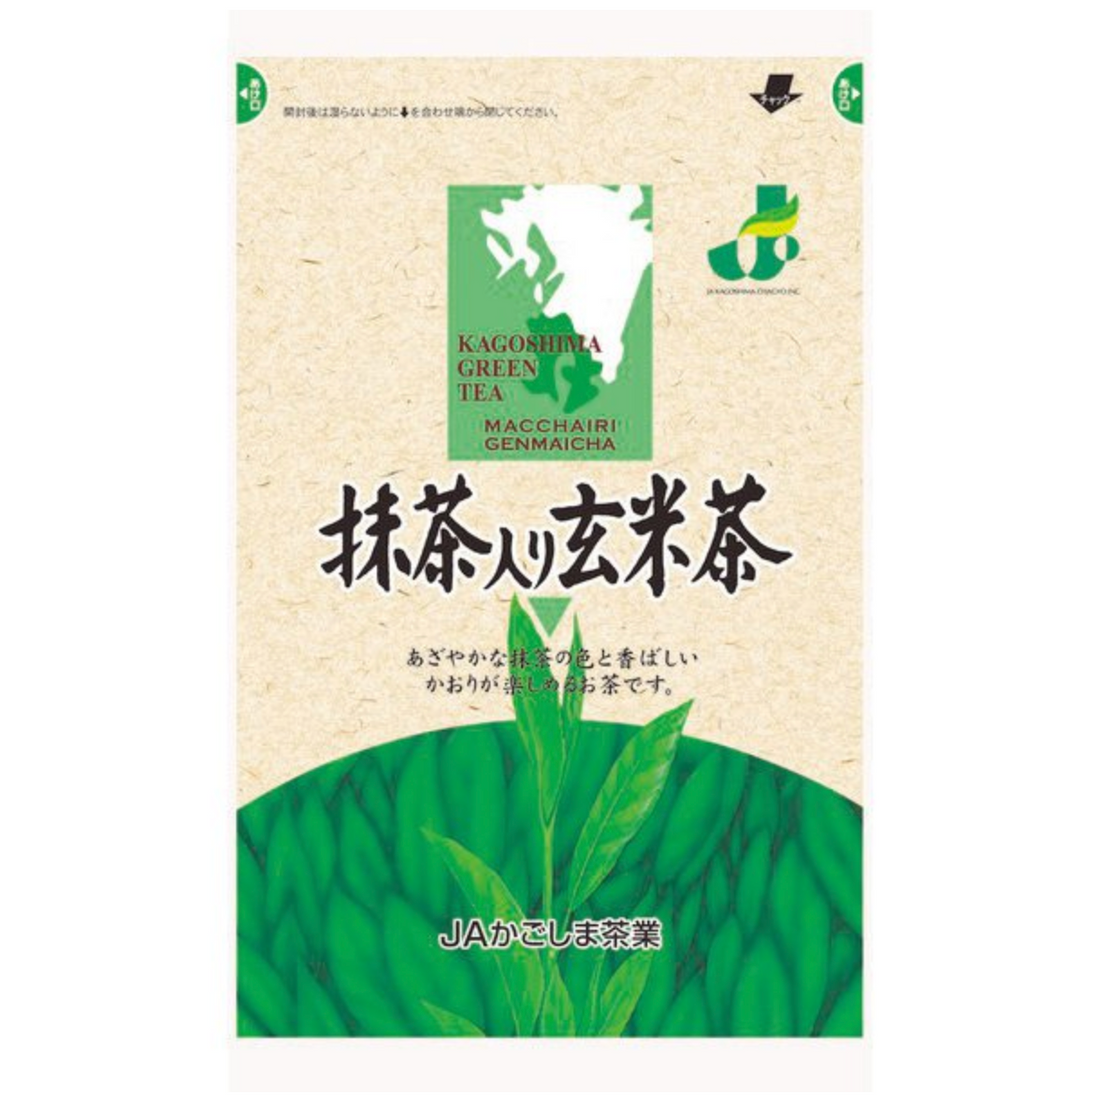 JA Kagoshima Tea Industry Matcha Genmaicha 200g